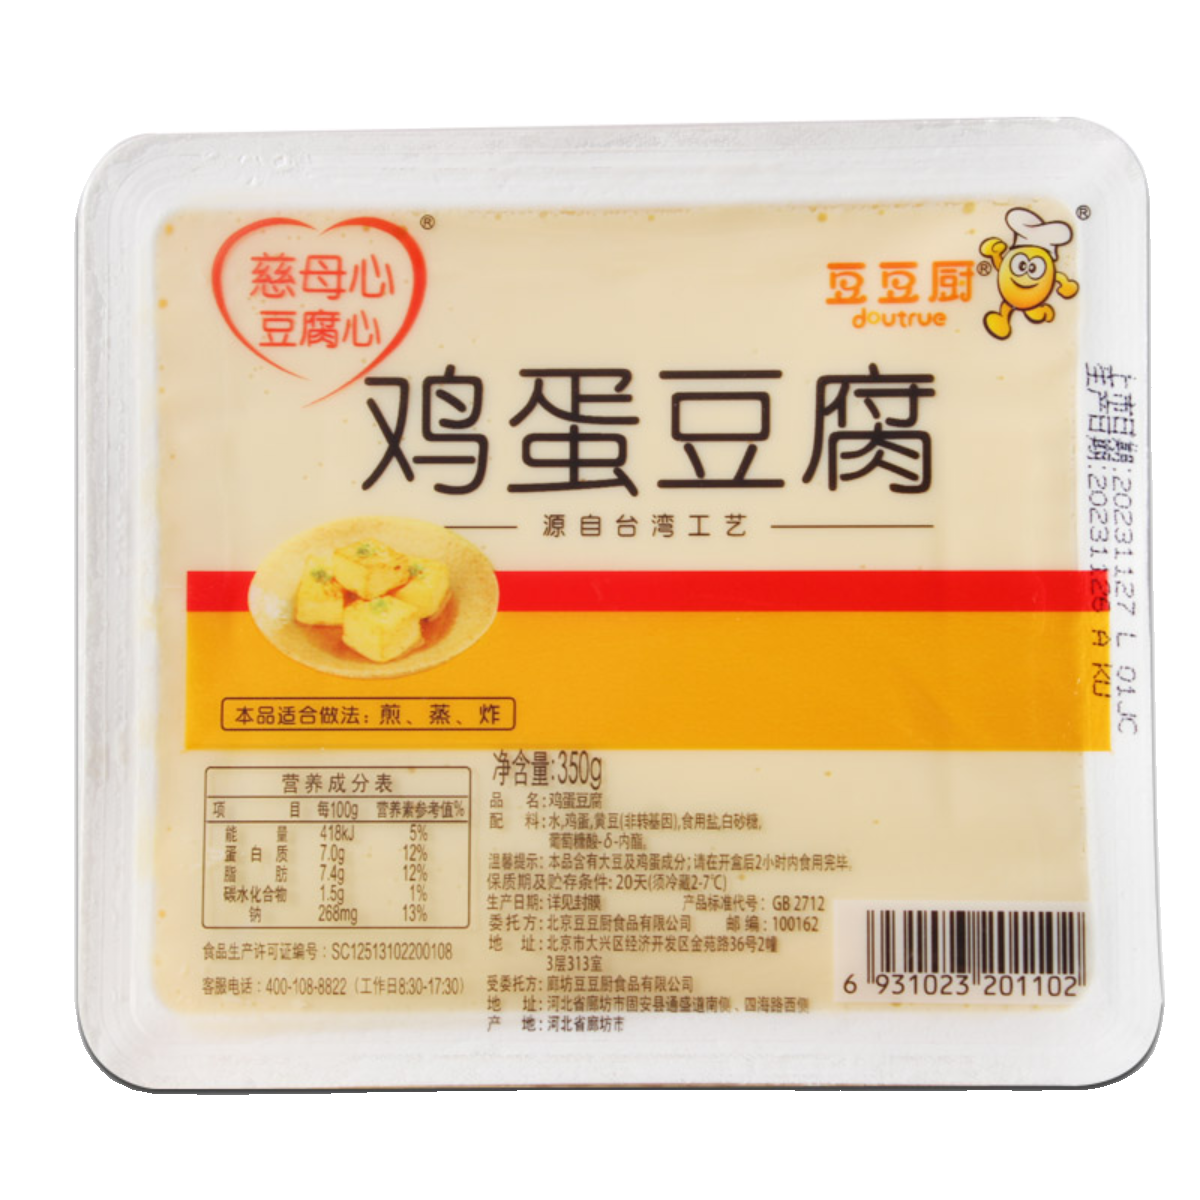 豆豆厨鸡蛋豆腐350g*2盒装 煎炸蒸汤新鲜嫩滑台湾工艺 家庭餐饮 - 图3